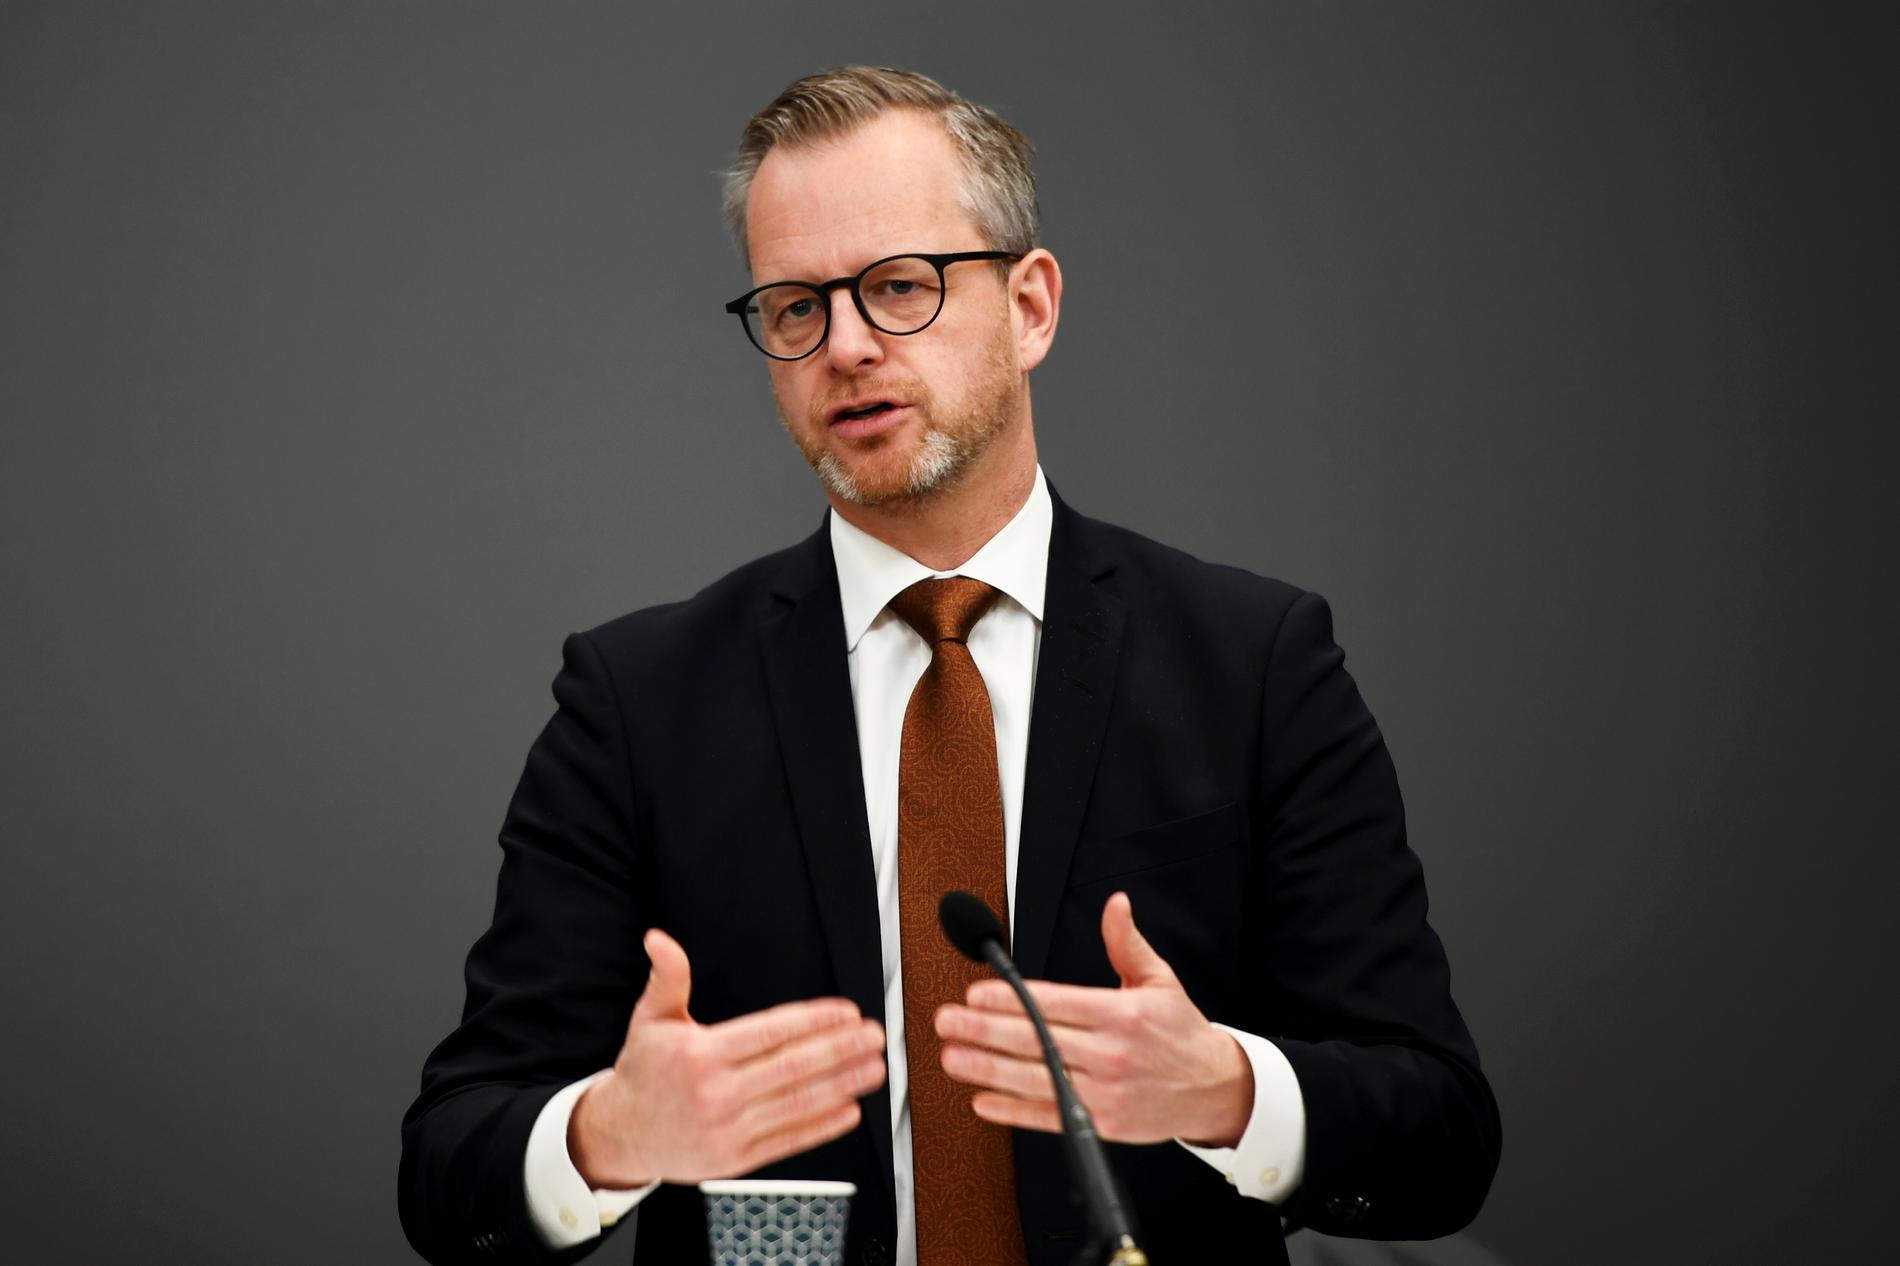 Inrikesminister Mikael Damberg (S) tar emot betänkandet "Åtgärder i gränsnära områden" vid en pressträff i Rosenbad.